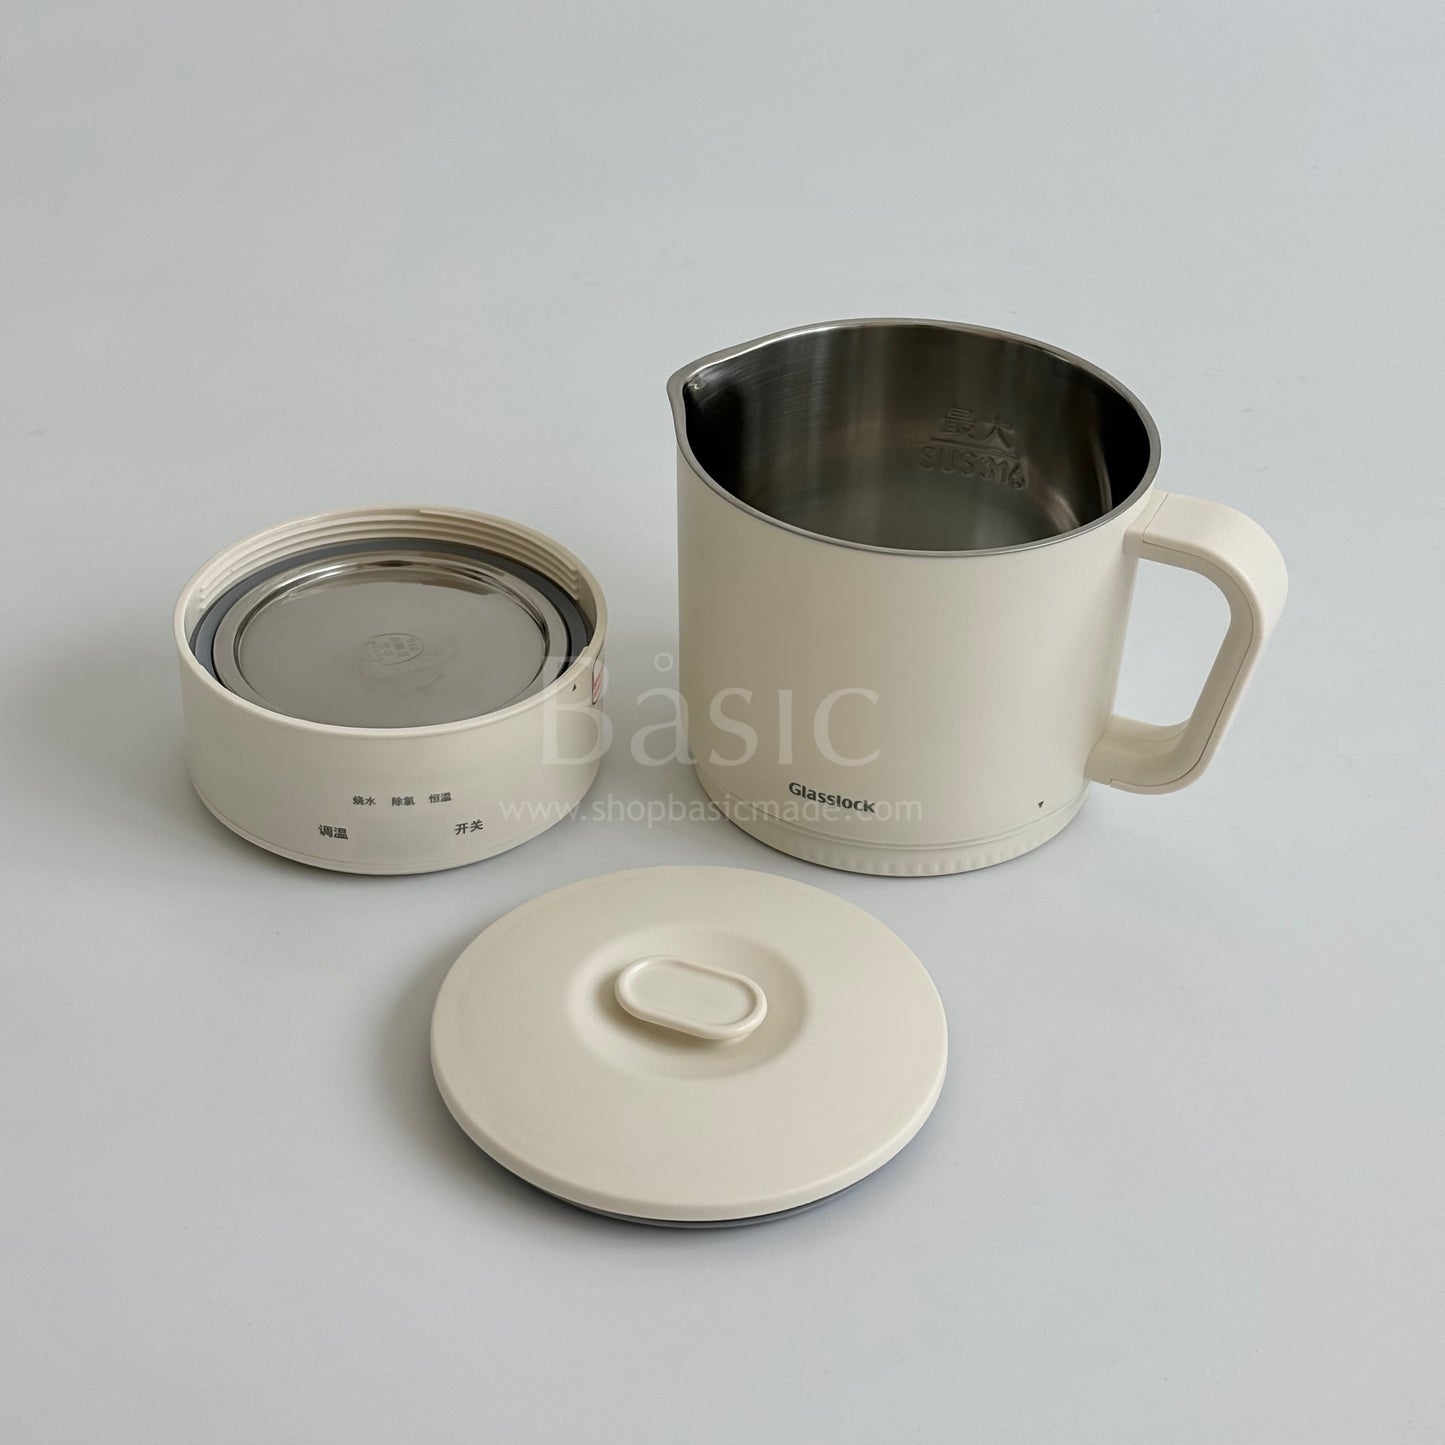 Glasslock Portable Tea Pot